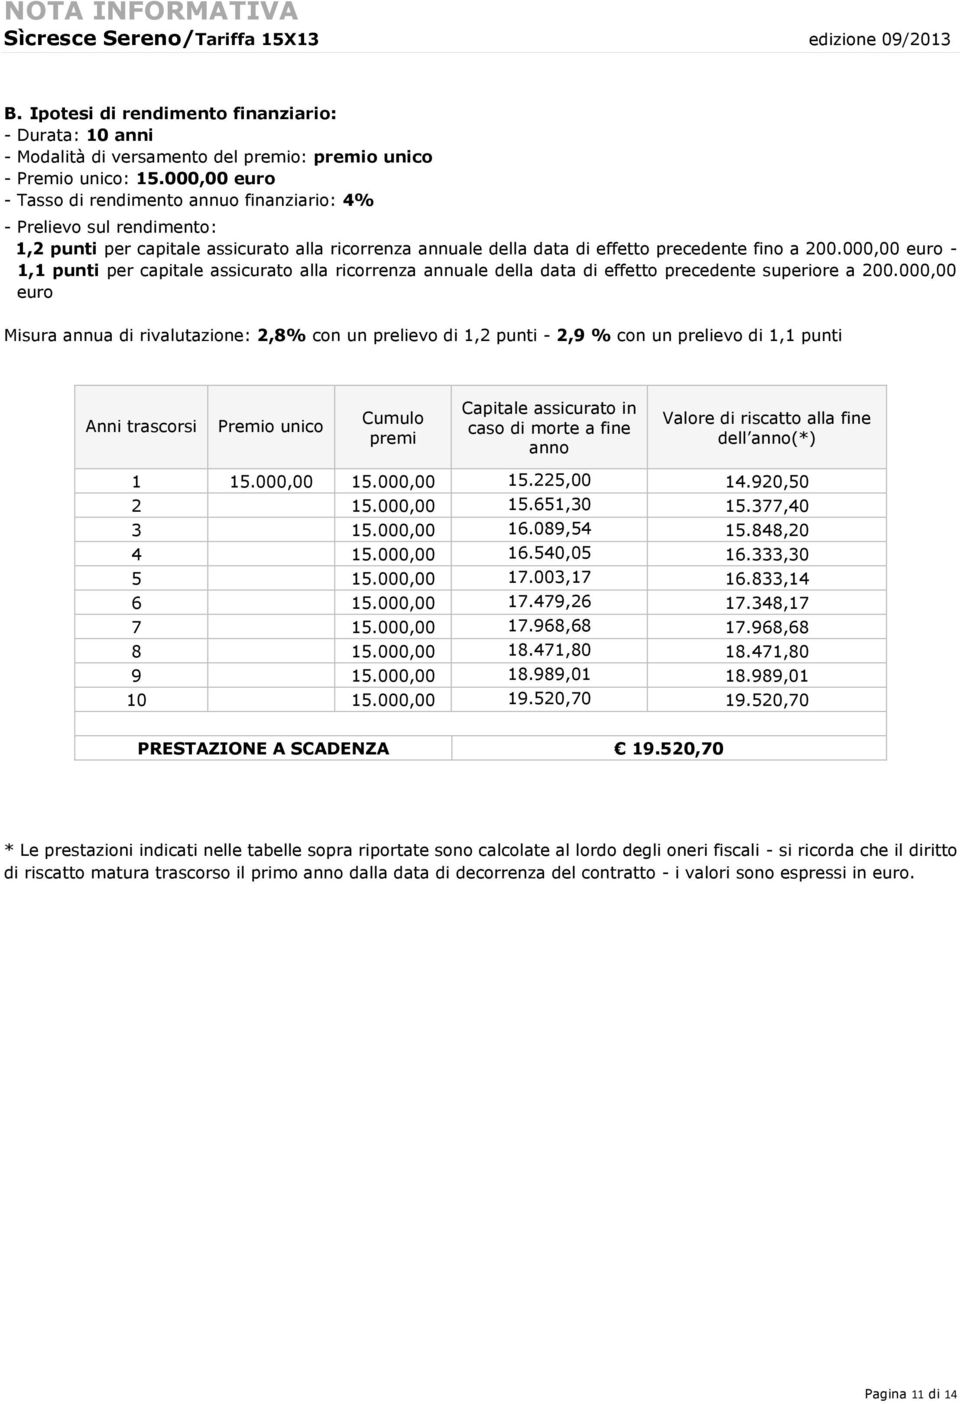 000,00 euro - 1,1 punti per capitale assicurato alla ricorrenza annuale della data di effetto precedente superiore a 200.